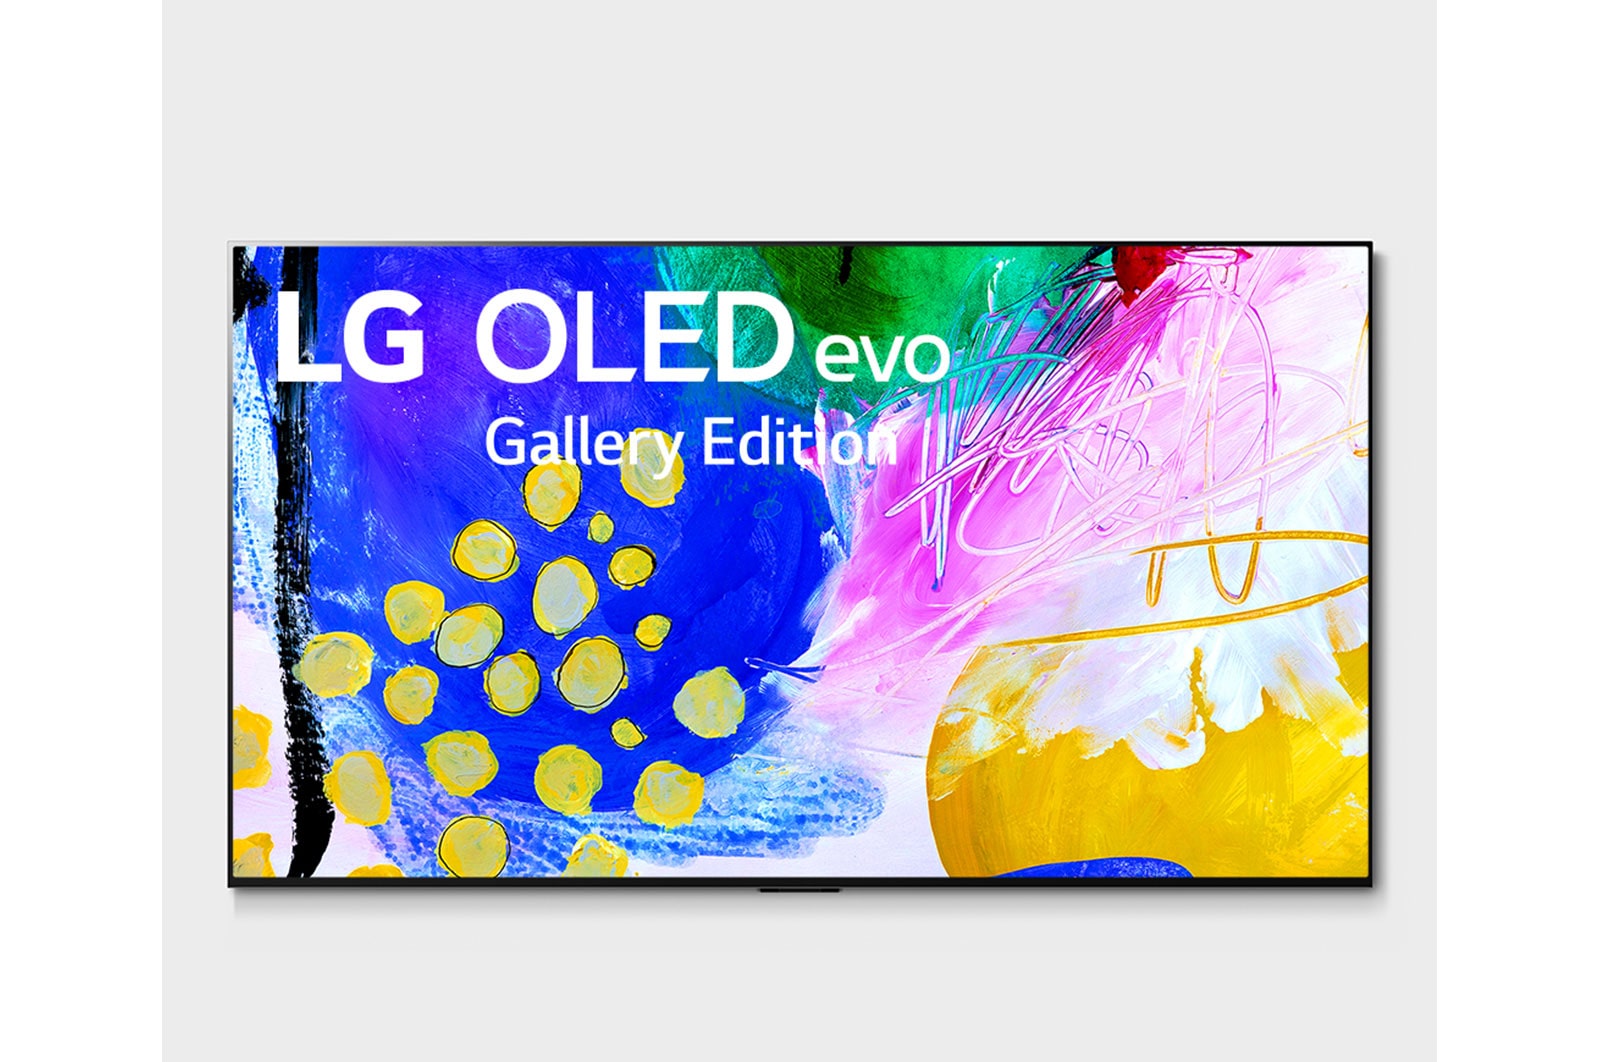 LG 4K OLED телевизор 77'' LG OLED77G2RLA, Вид спереди LG OLED evo серии Gallery, OLED77G2RLA